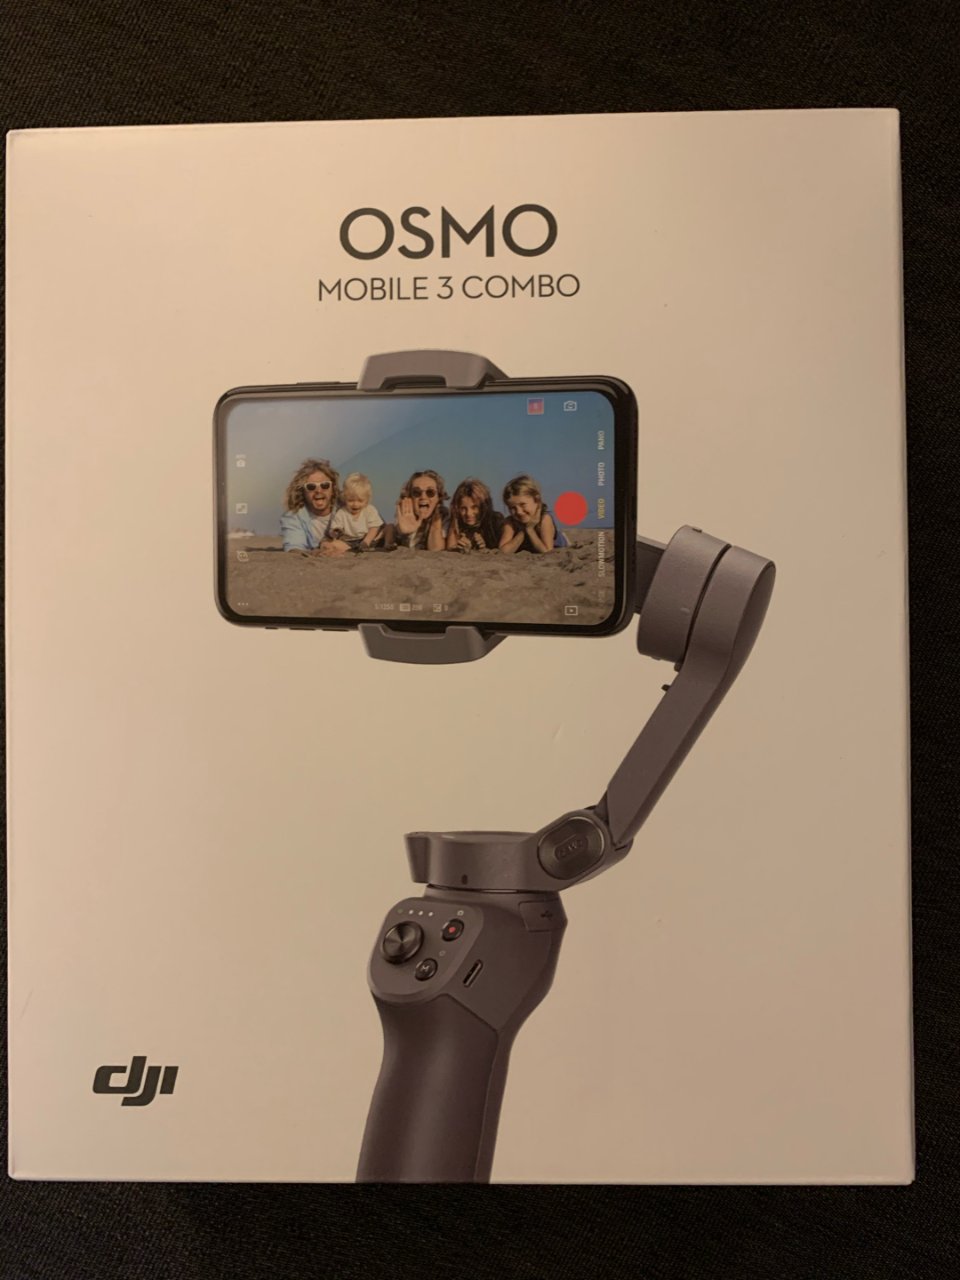 DJI OSMO mobile 3,DJI 大疆,Osmo,Amazon 亚马逊